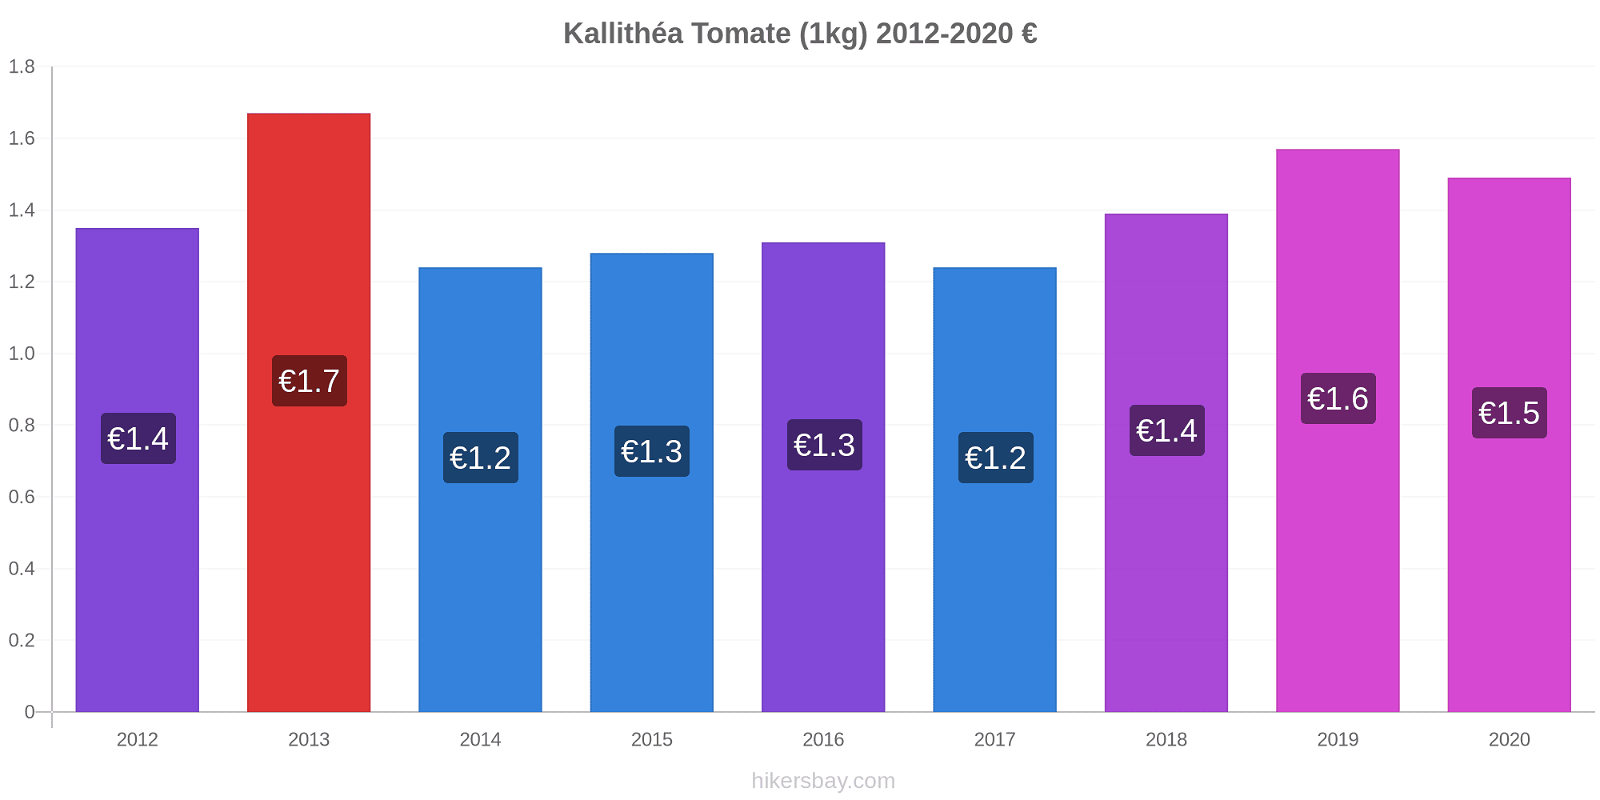 Kallithéa changements de prix Tomate (1kg) hikersbay.com